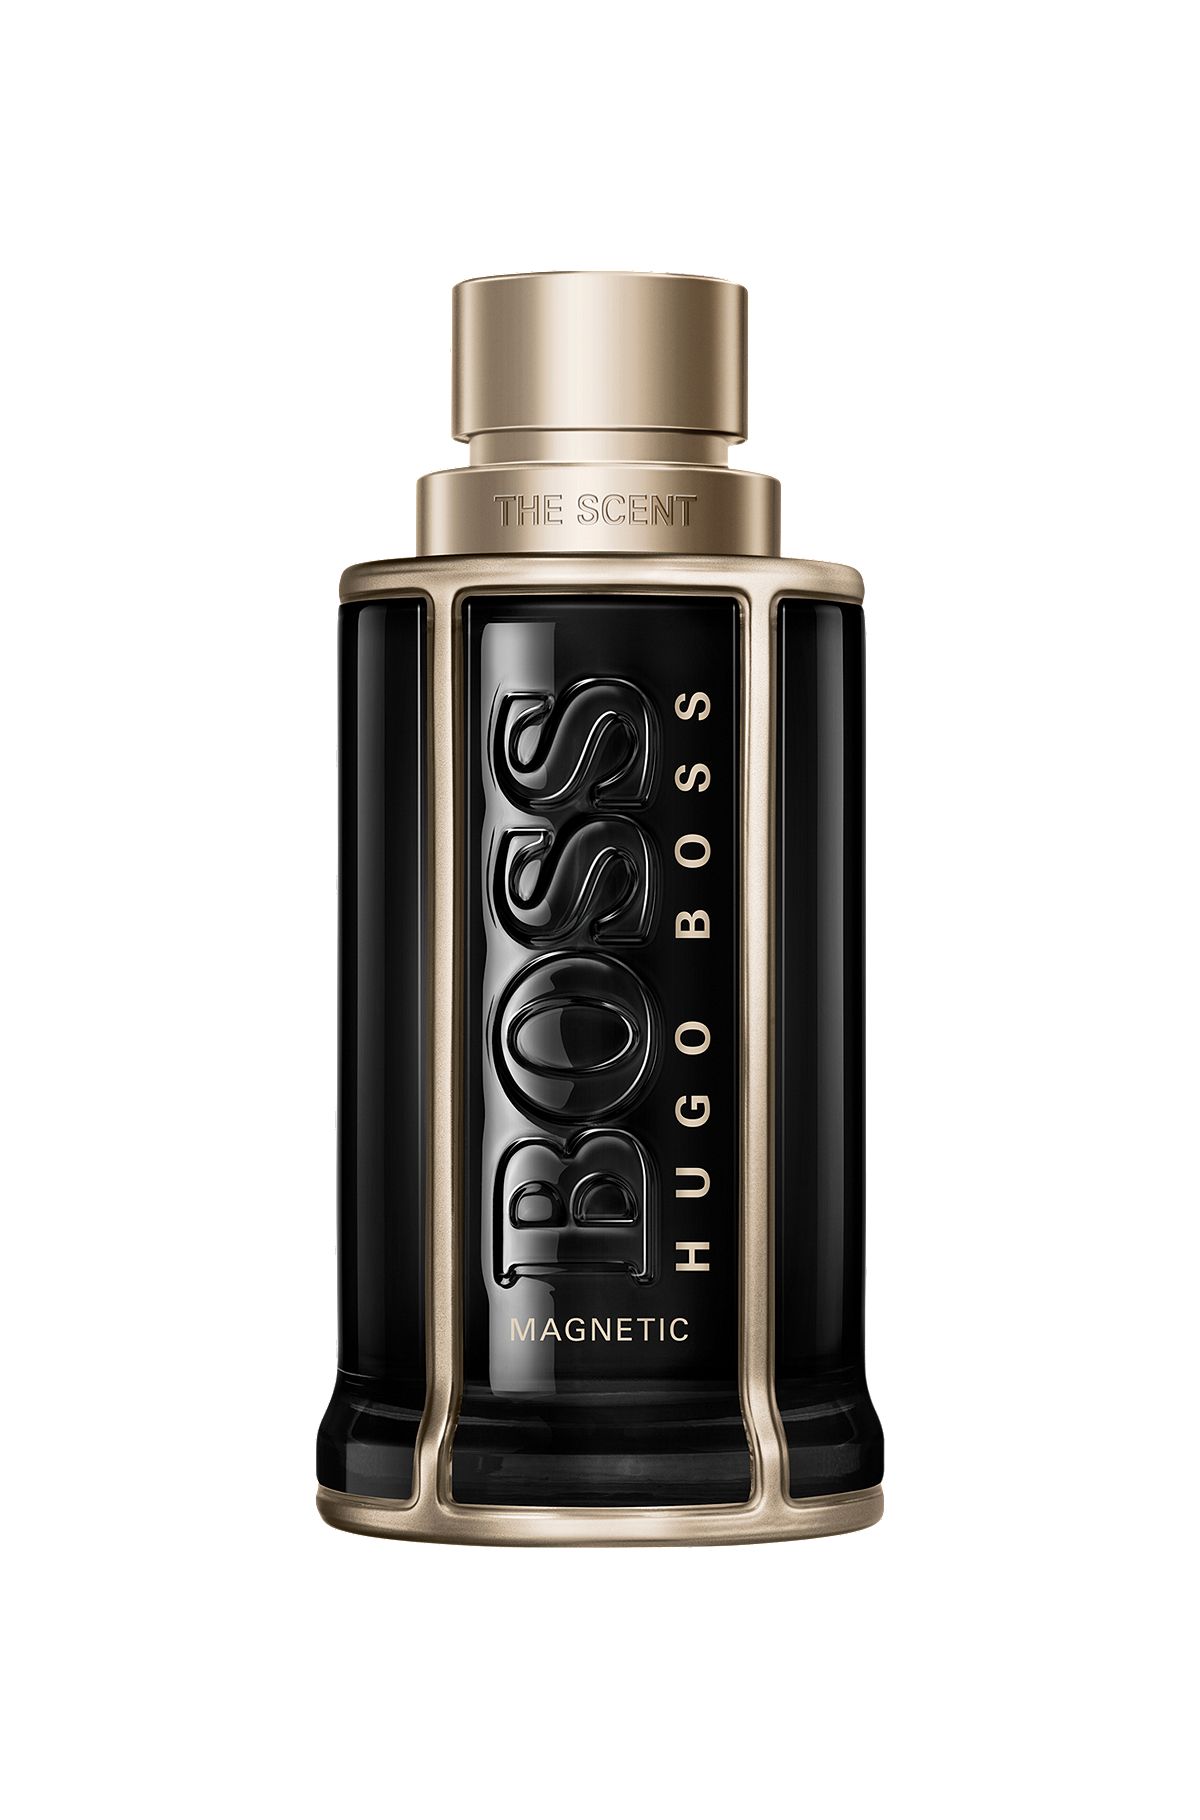 BOSS The Scent Magnetic eau de parfum 100ml, Assorted-Pre-Pack